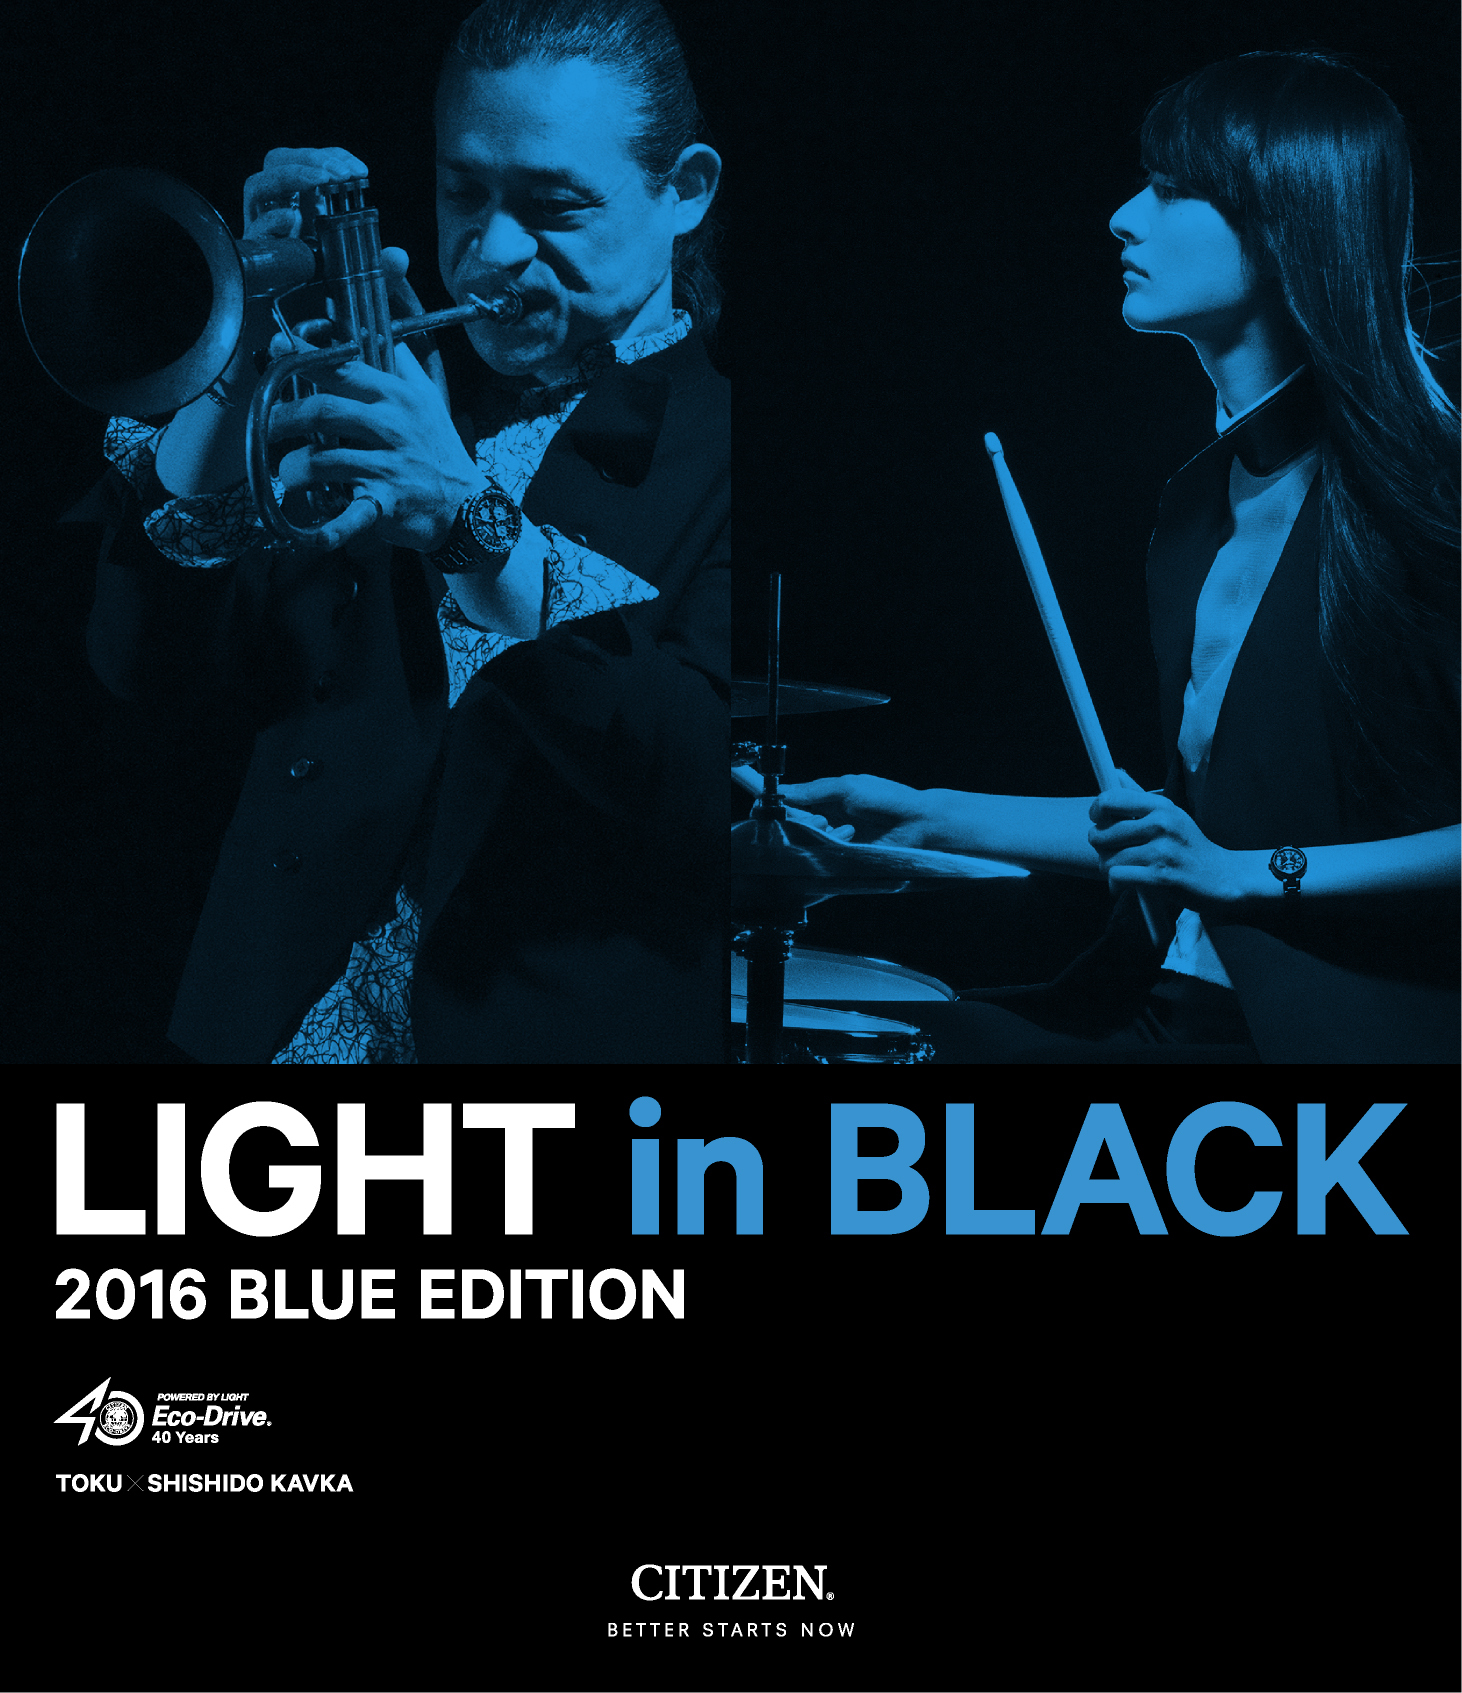 シチズン、光と時をテーマにした限定モデルLIGHT in BLACK 2016 BLUE